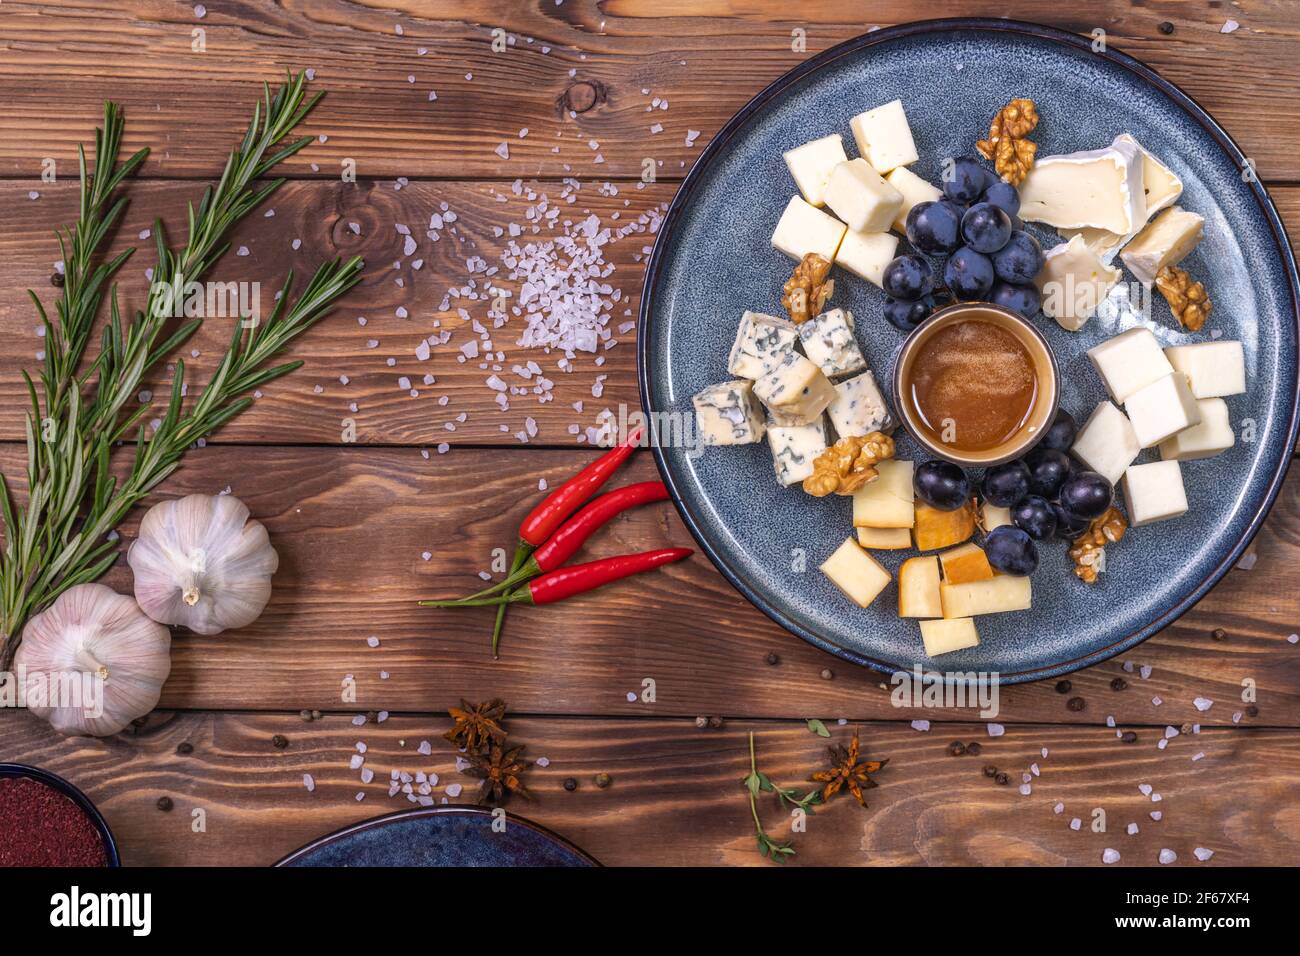 Ein Teller mit Käse, Honig, Trauben auf Holzgrund, mit Gewürzen, Rosmarin, Knoblauch verziert. Restaurant-Service. Stockfoto